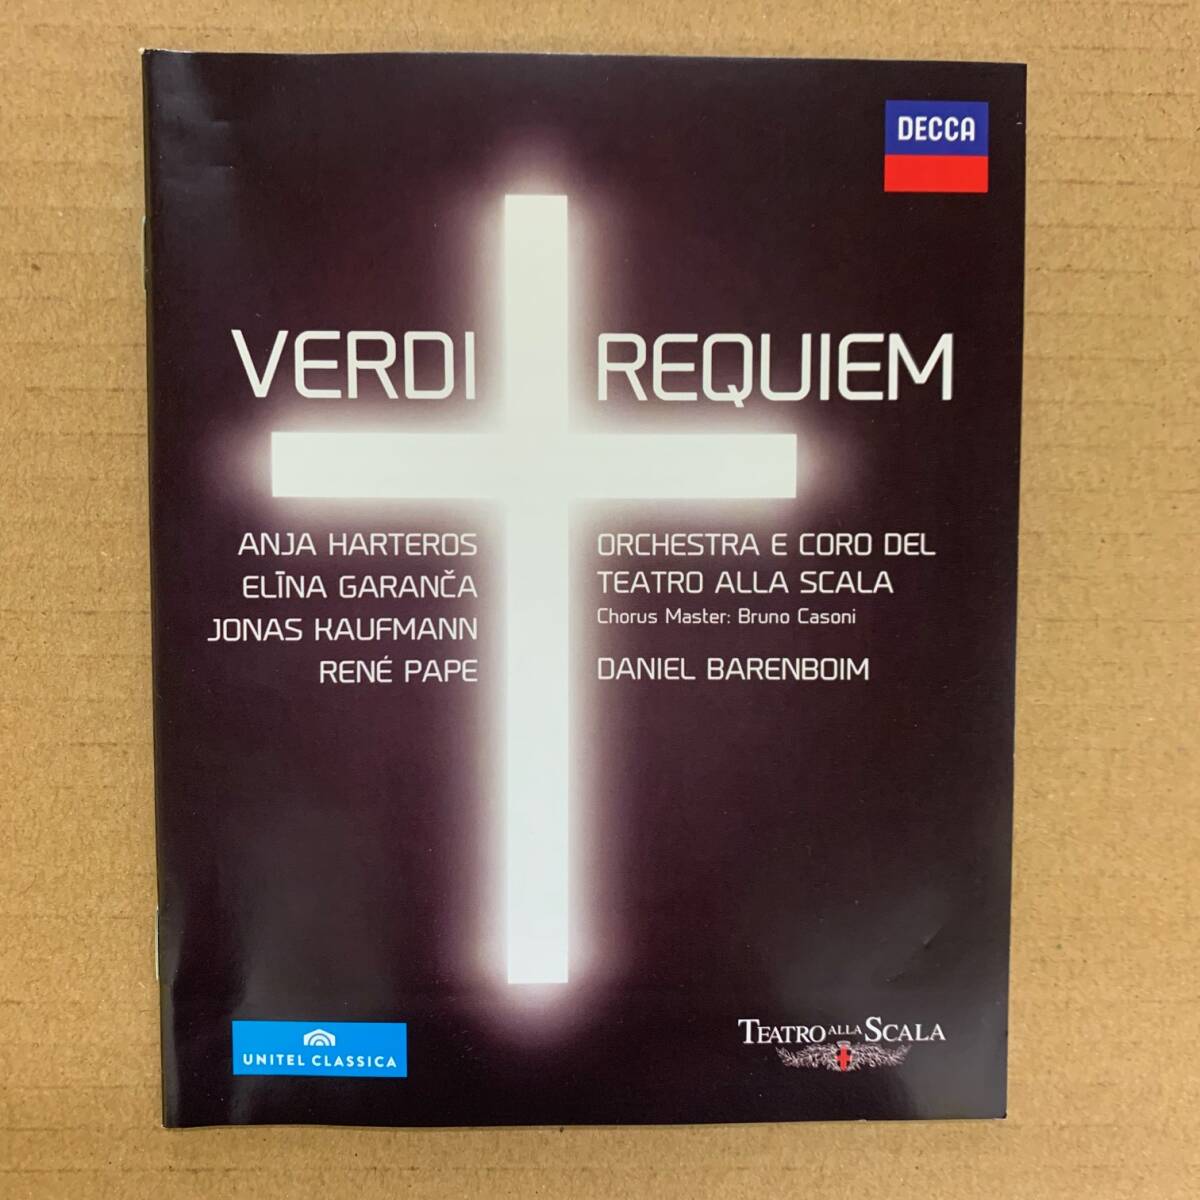 [Blu-ray] ヴェルディ - レクイエム [0044007438084] 輸入盤/バレンボイム/Verdi/Requiem/スカラ座/クラシック_画像4